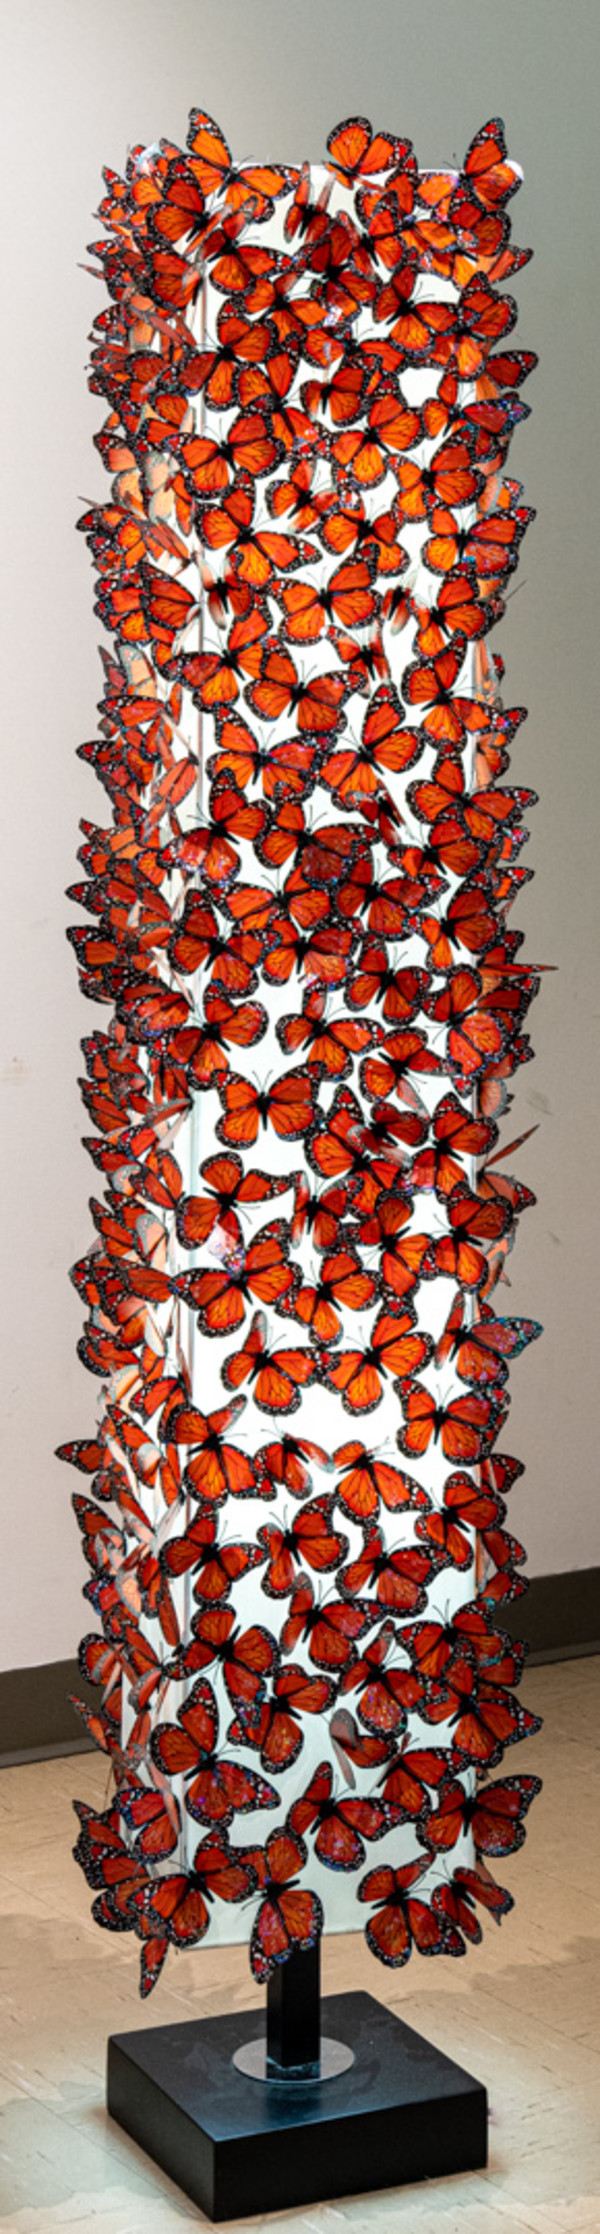 Butterfly Wings by Vicky Lentz